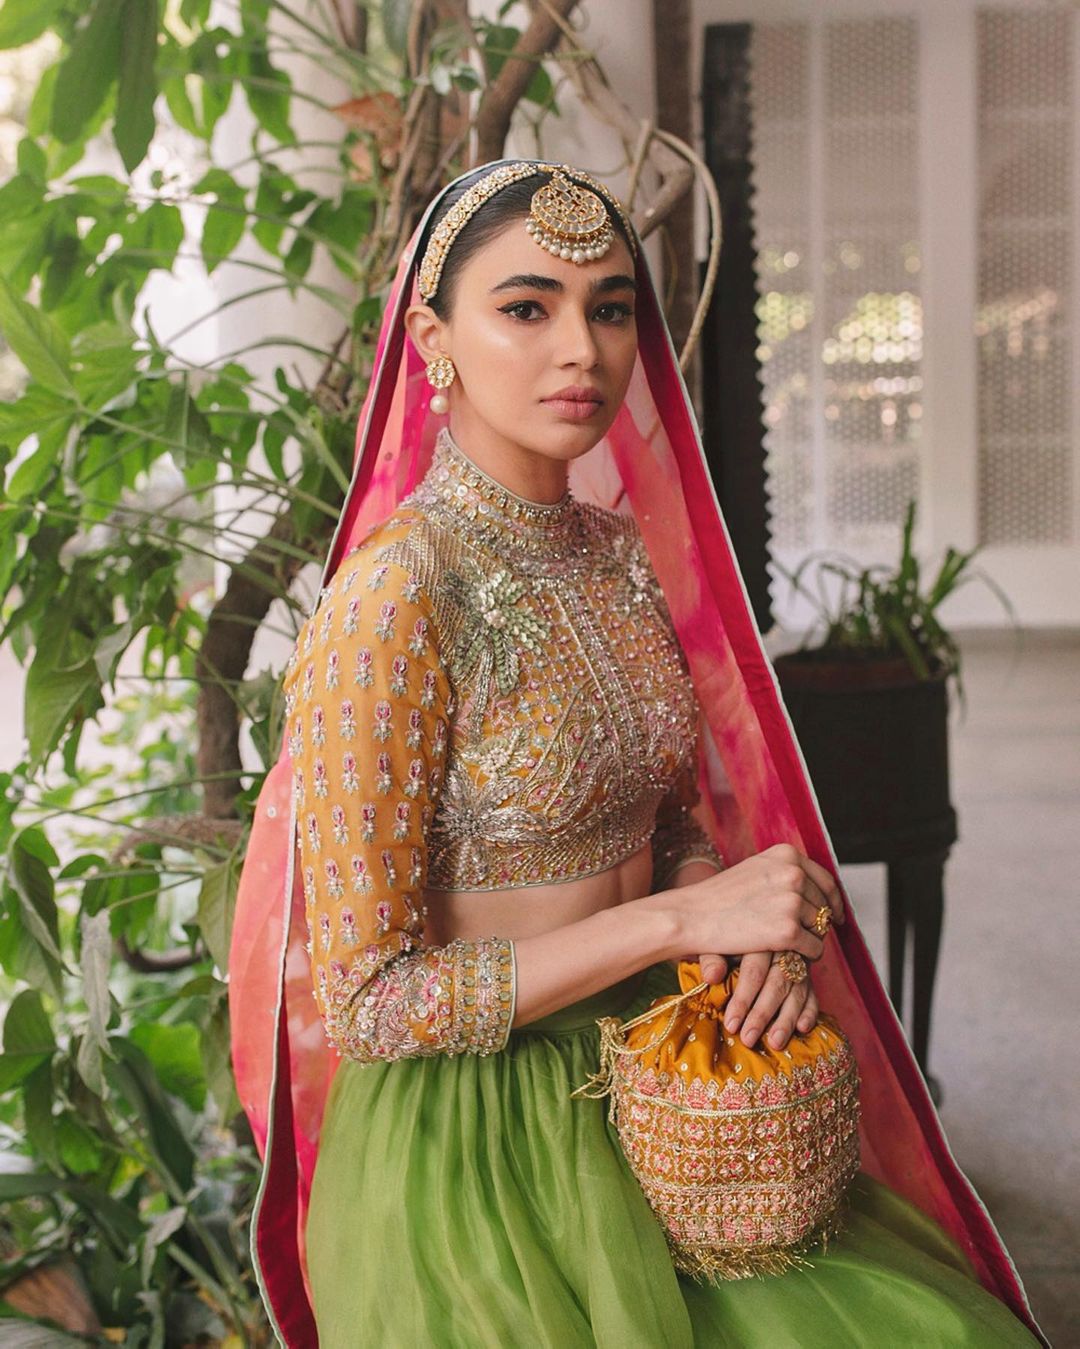 Actress Saheefa Jabbar Bridal Shoot for Hussain Rehar